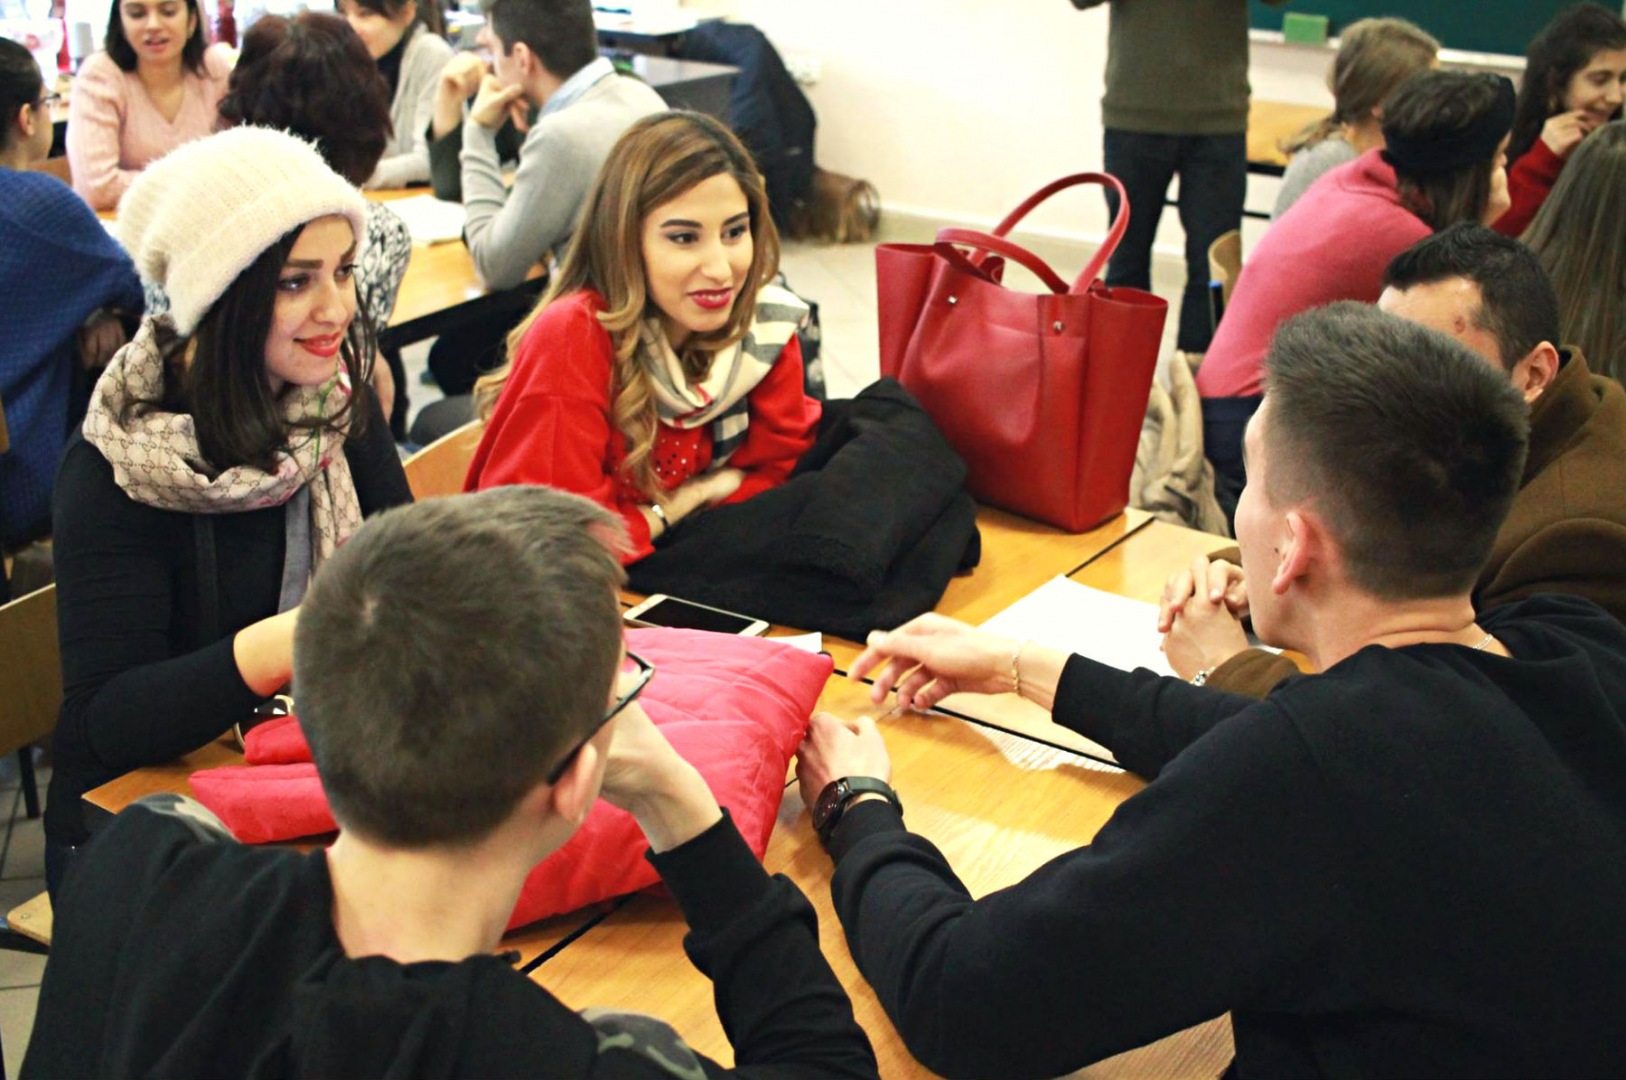 Warsztaty międzykulturowe dla uczniów w Głuchołazach. Prowadzą je studenci Intercultural Communication i uczestnicy programu Erasmus+ pochodzący m.in. z Afganistanu, Algierii, Chin, Czarnogóry, Egiptu, Gambii, Grecji, Hiszpanii, Iranu, Rosji i Turcji